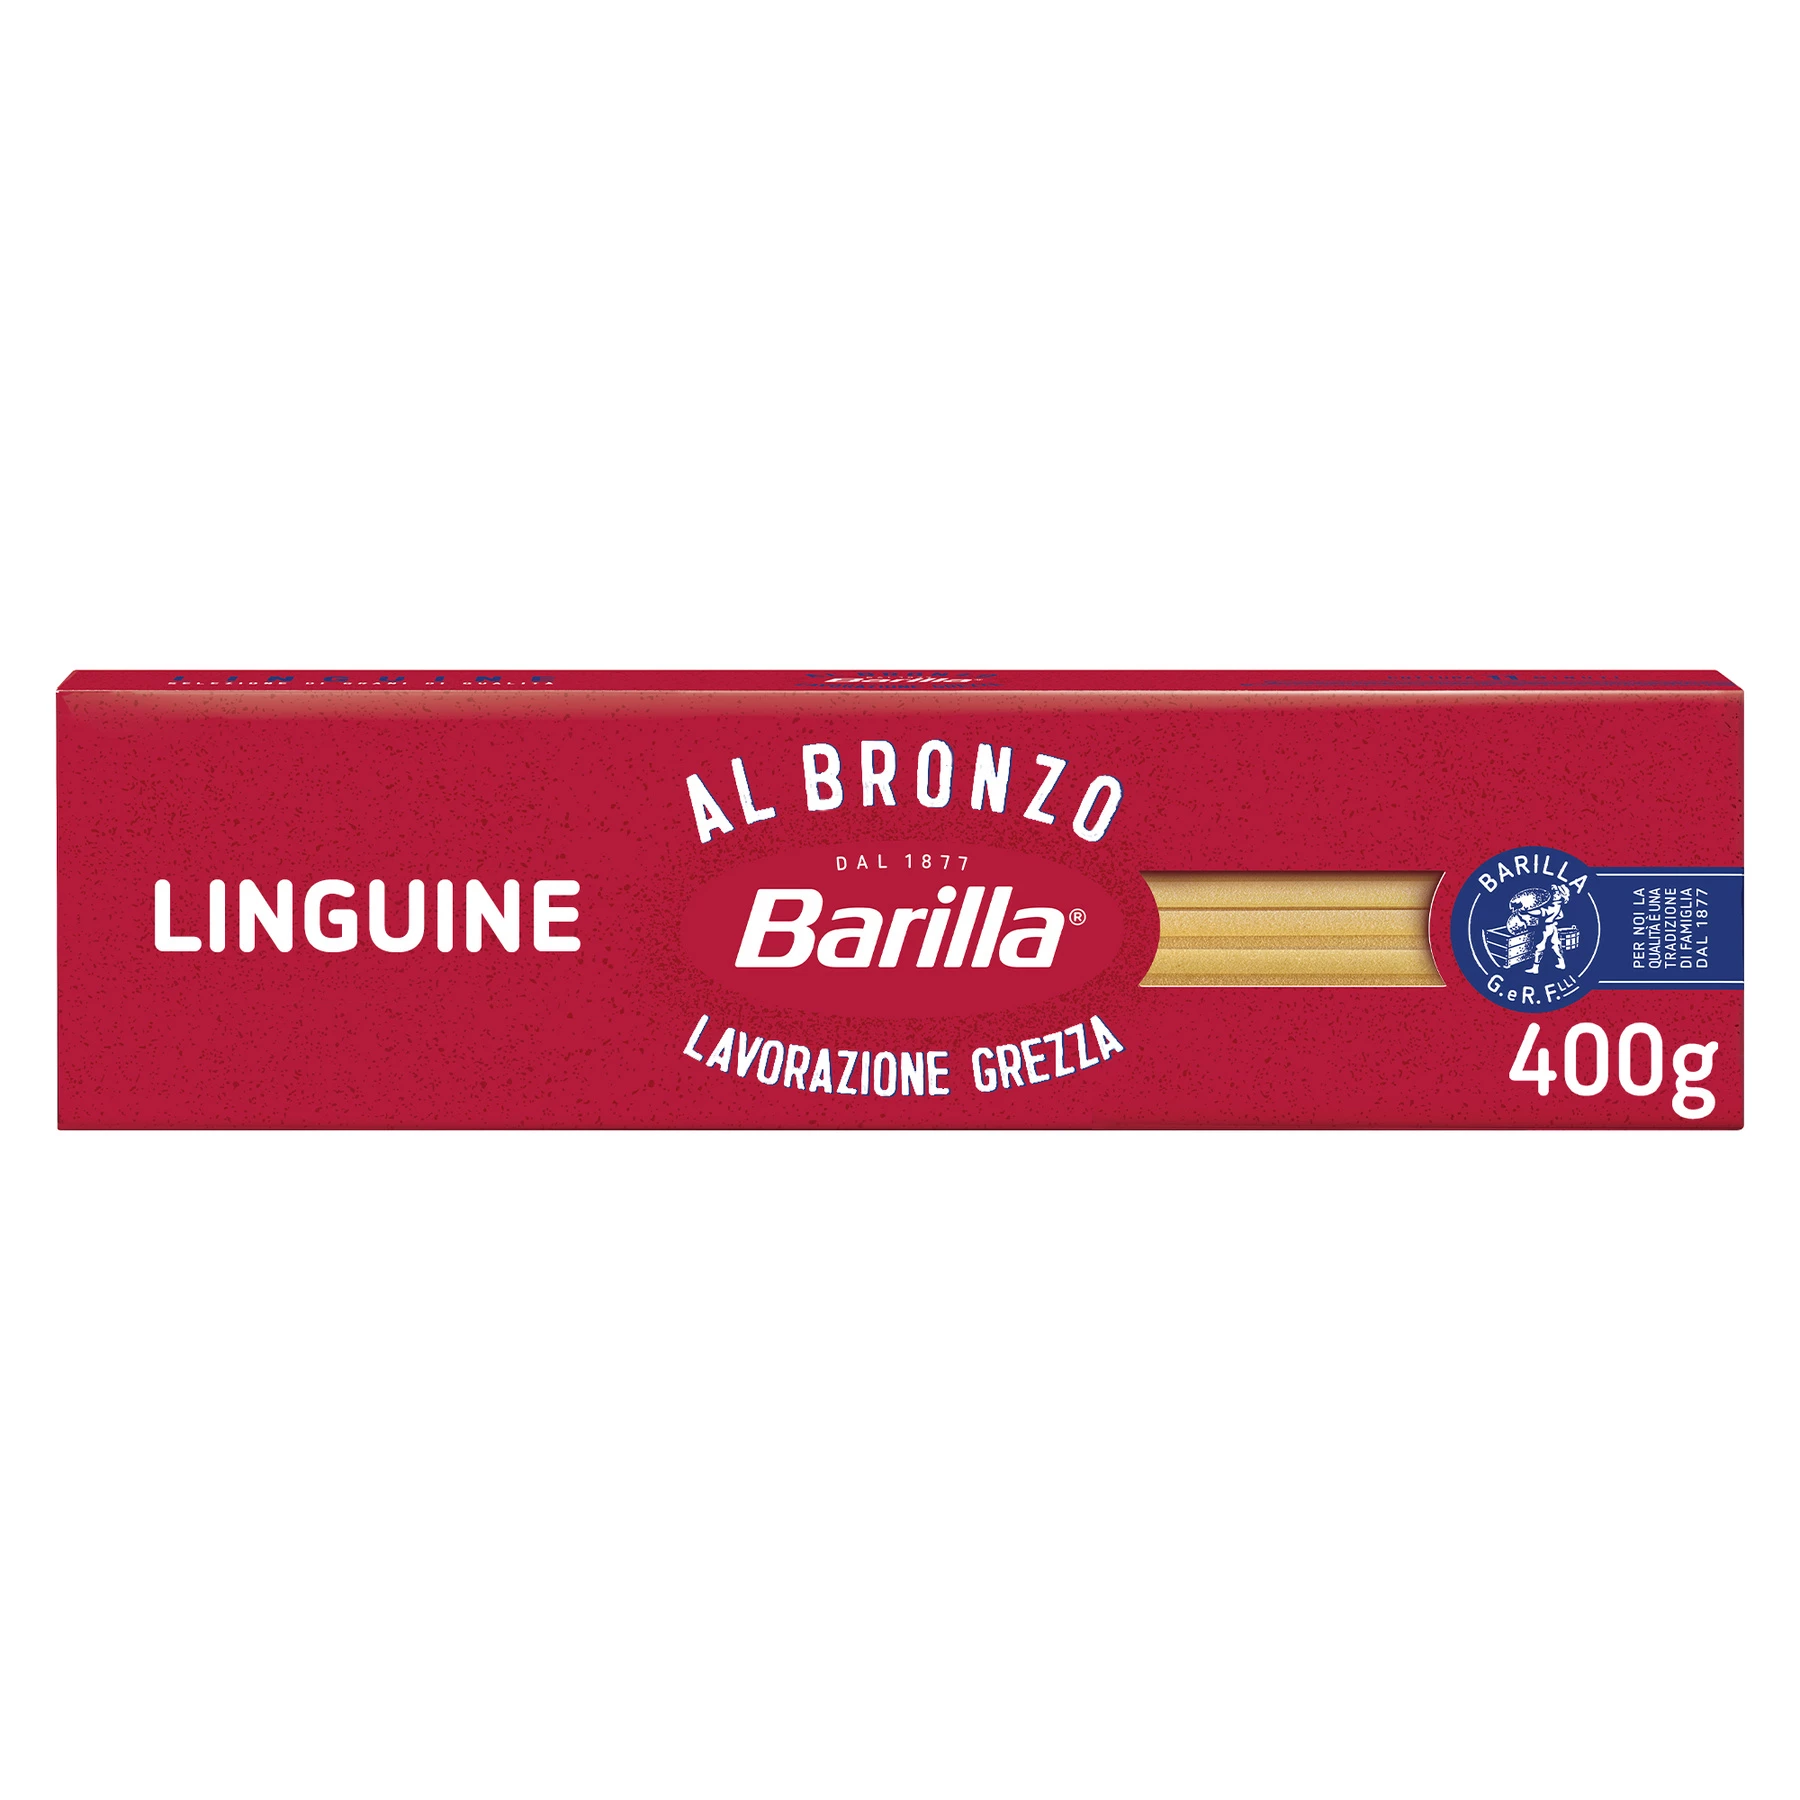 Linguine Al Bronzo, 400g - BARILLA